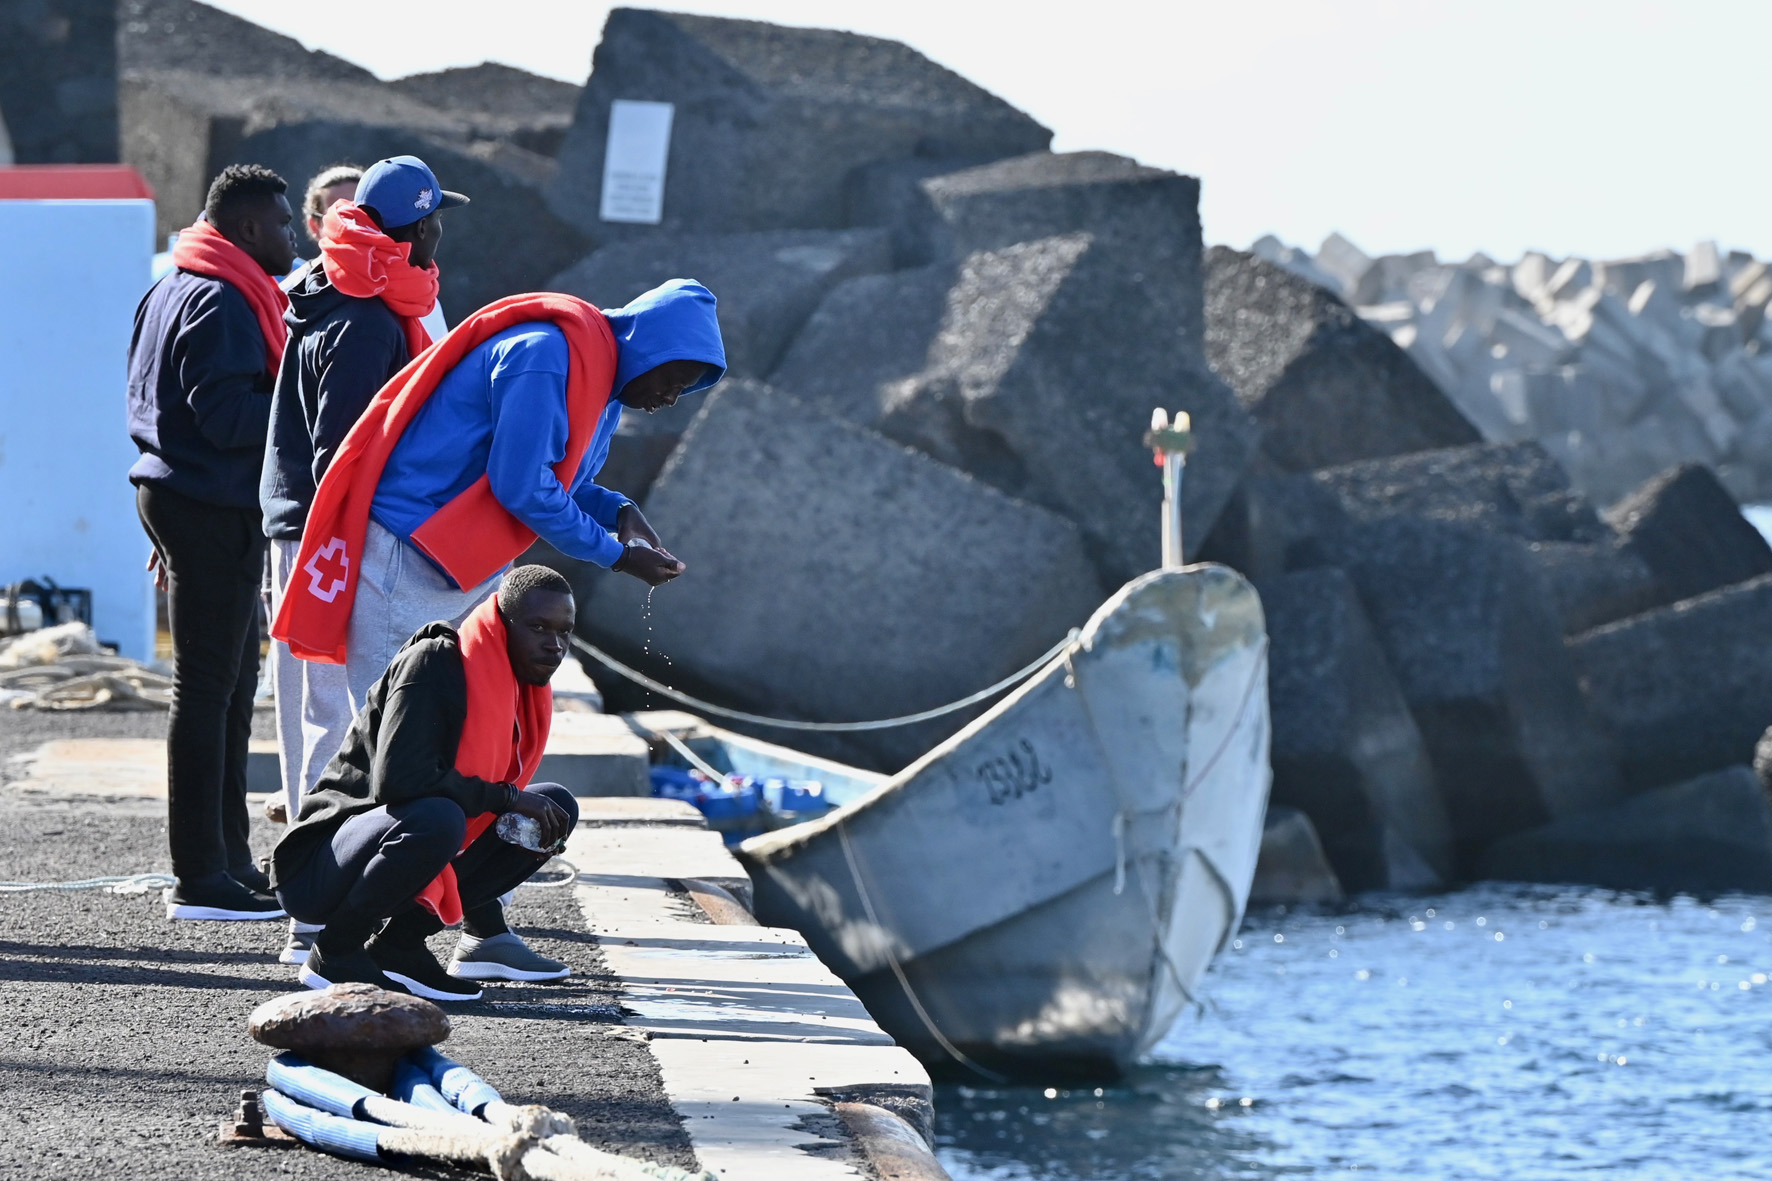 Salvamento Marítimo rescatan a 58 inmigrantes en un cayuco que navegaba en aguas próximas a El Hierro